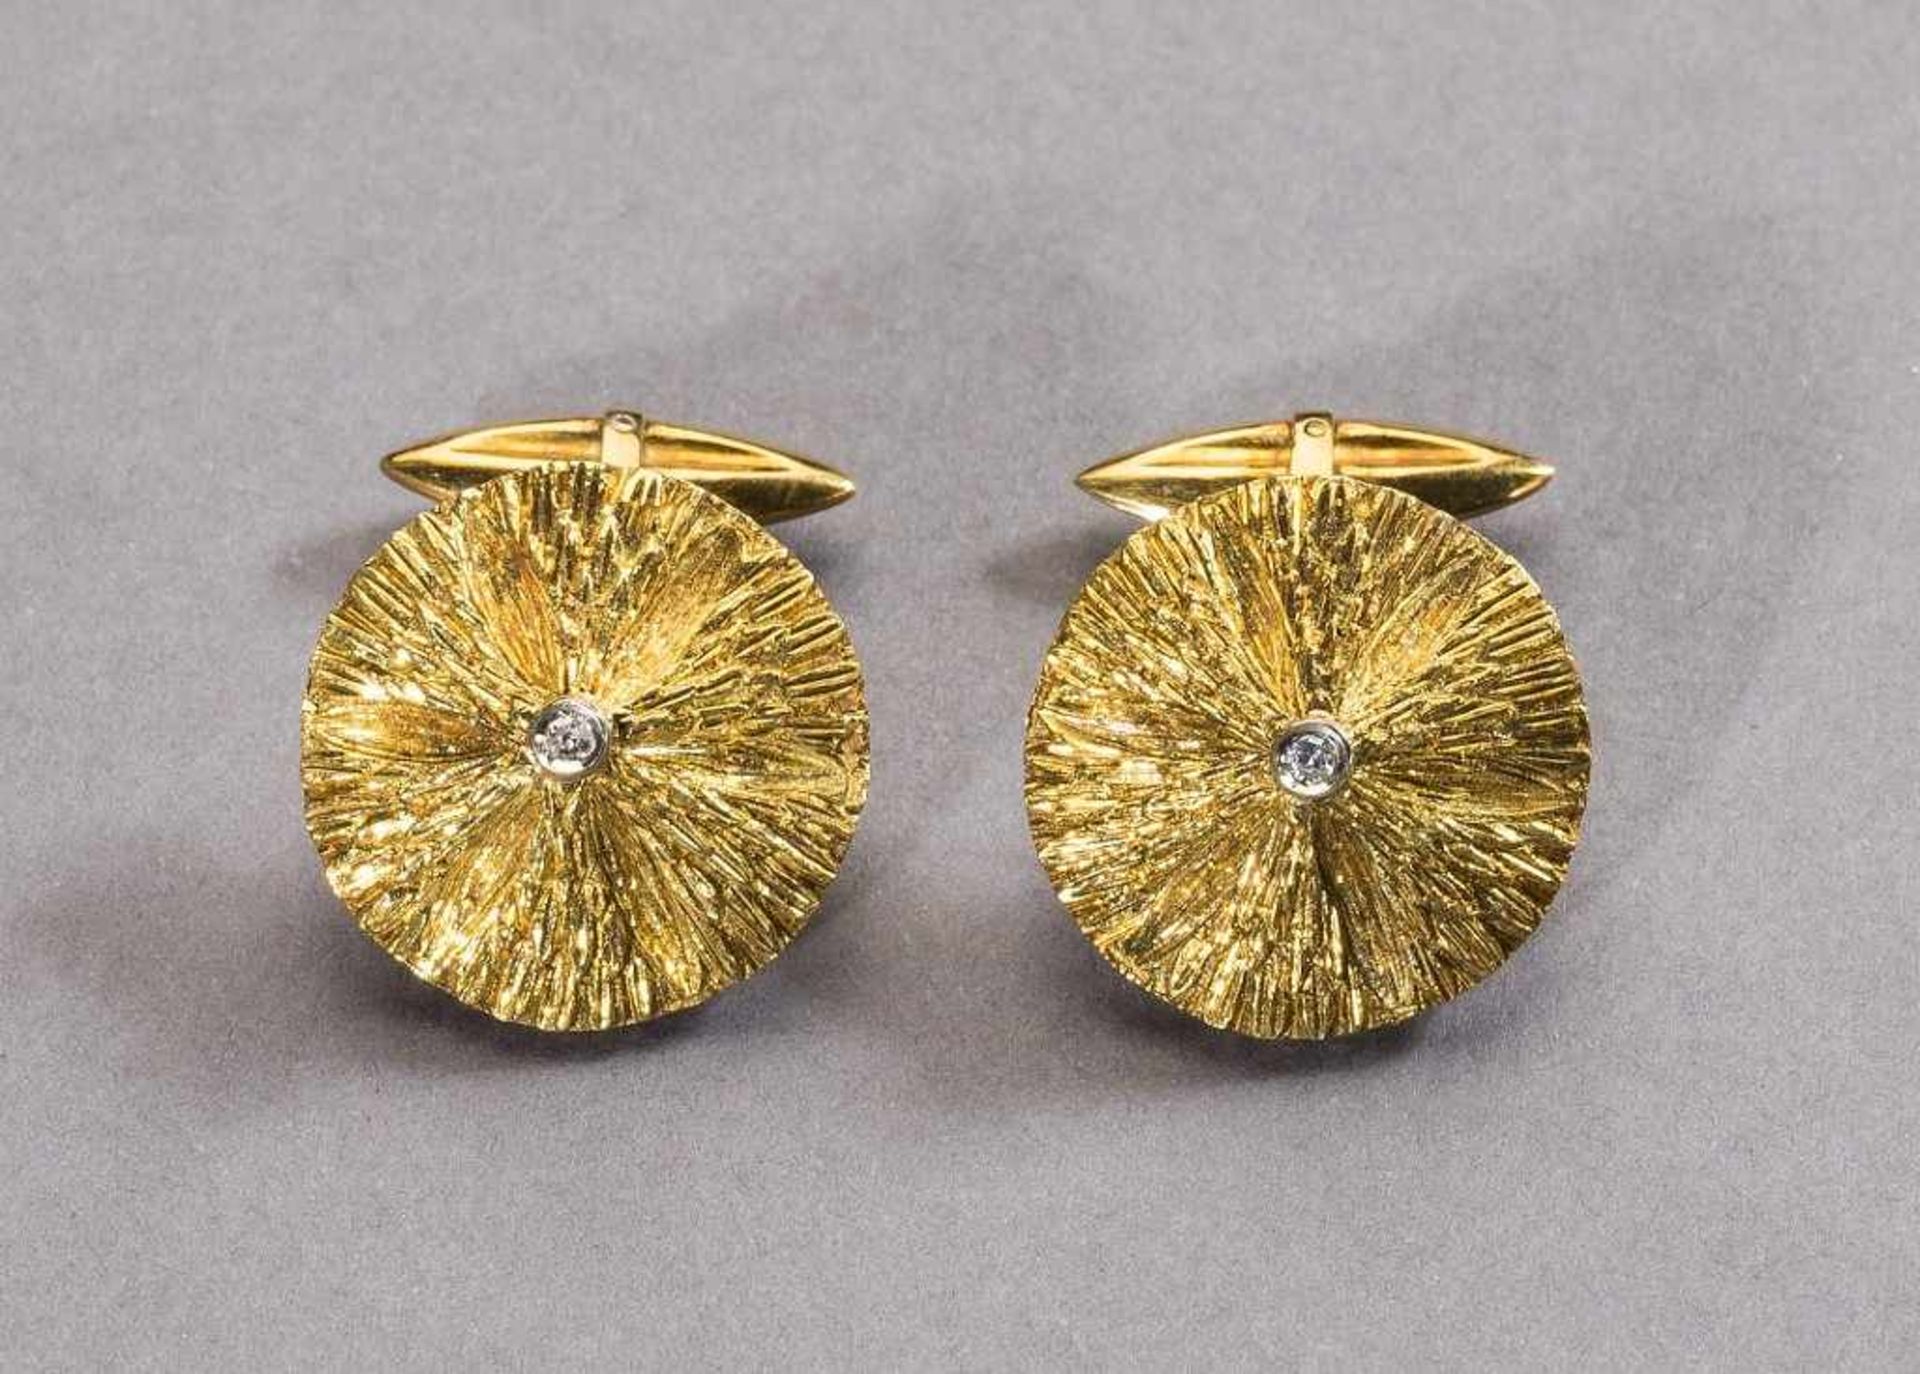 Paar goldene Manschettenknöpfe mit kleinen Diamanten. 18 ct. GG. 12,5 g